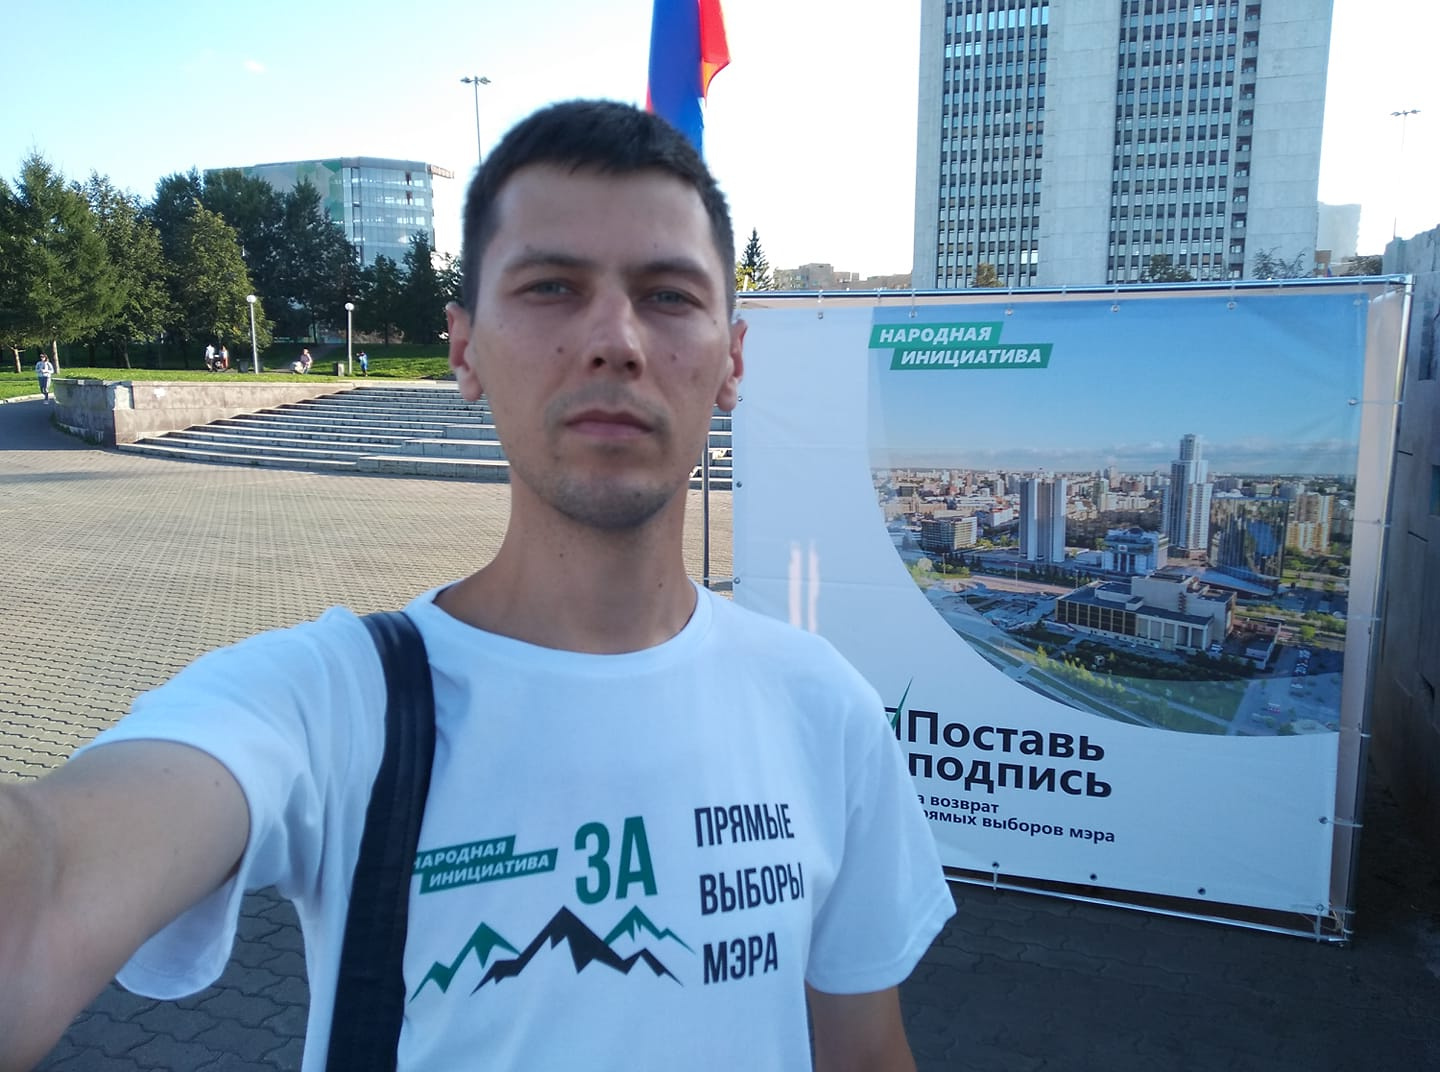 Владислав Постников — один из активистов сбора подписей за прямые выборы мэра